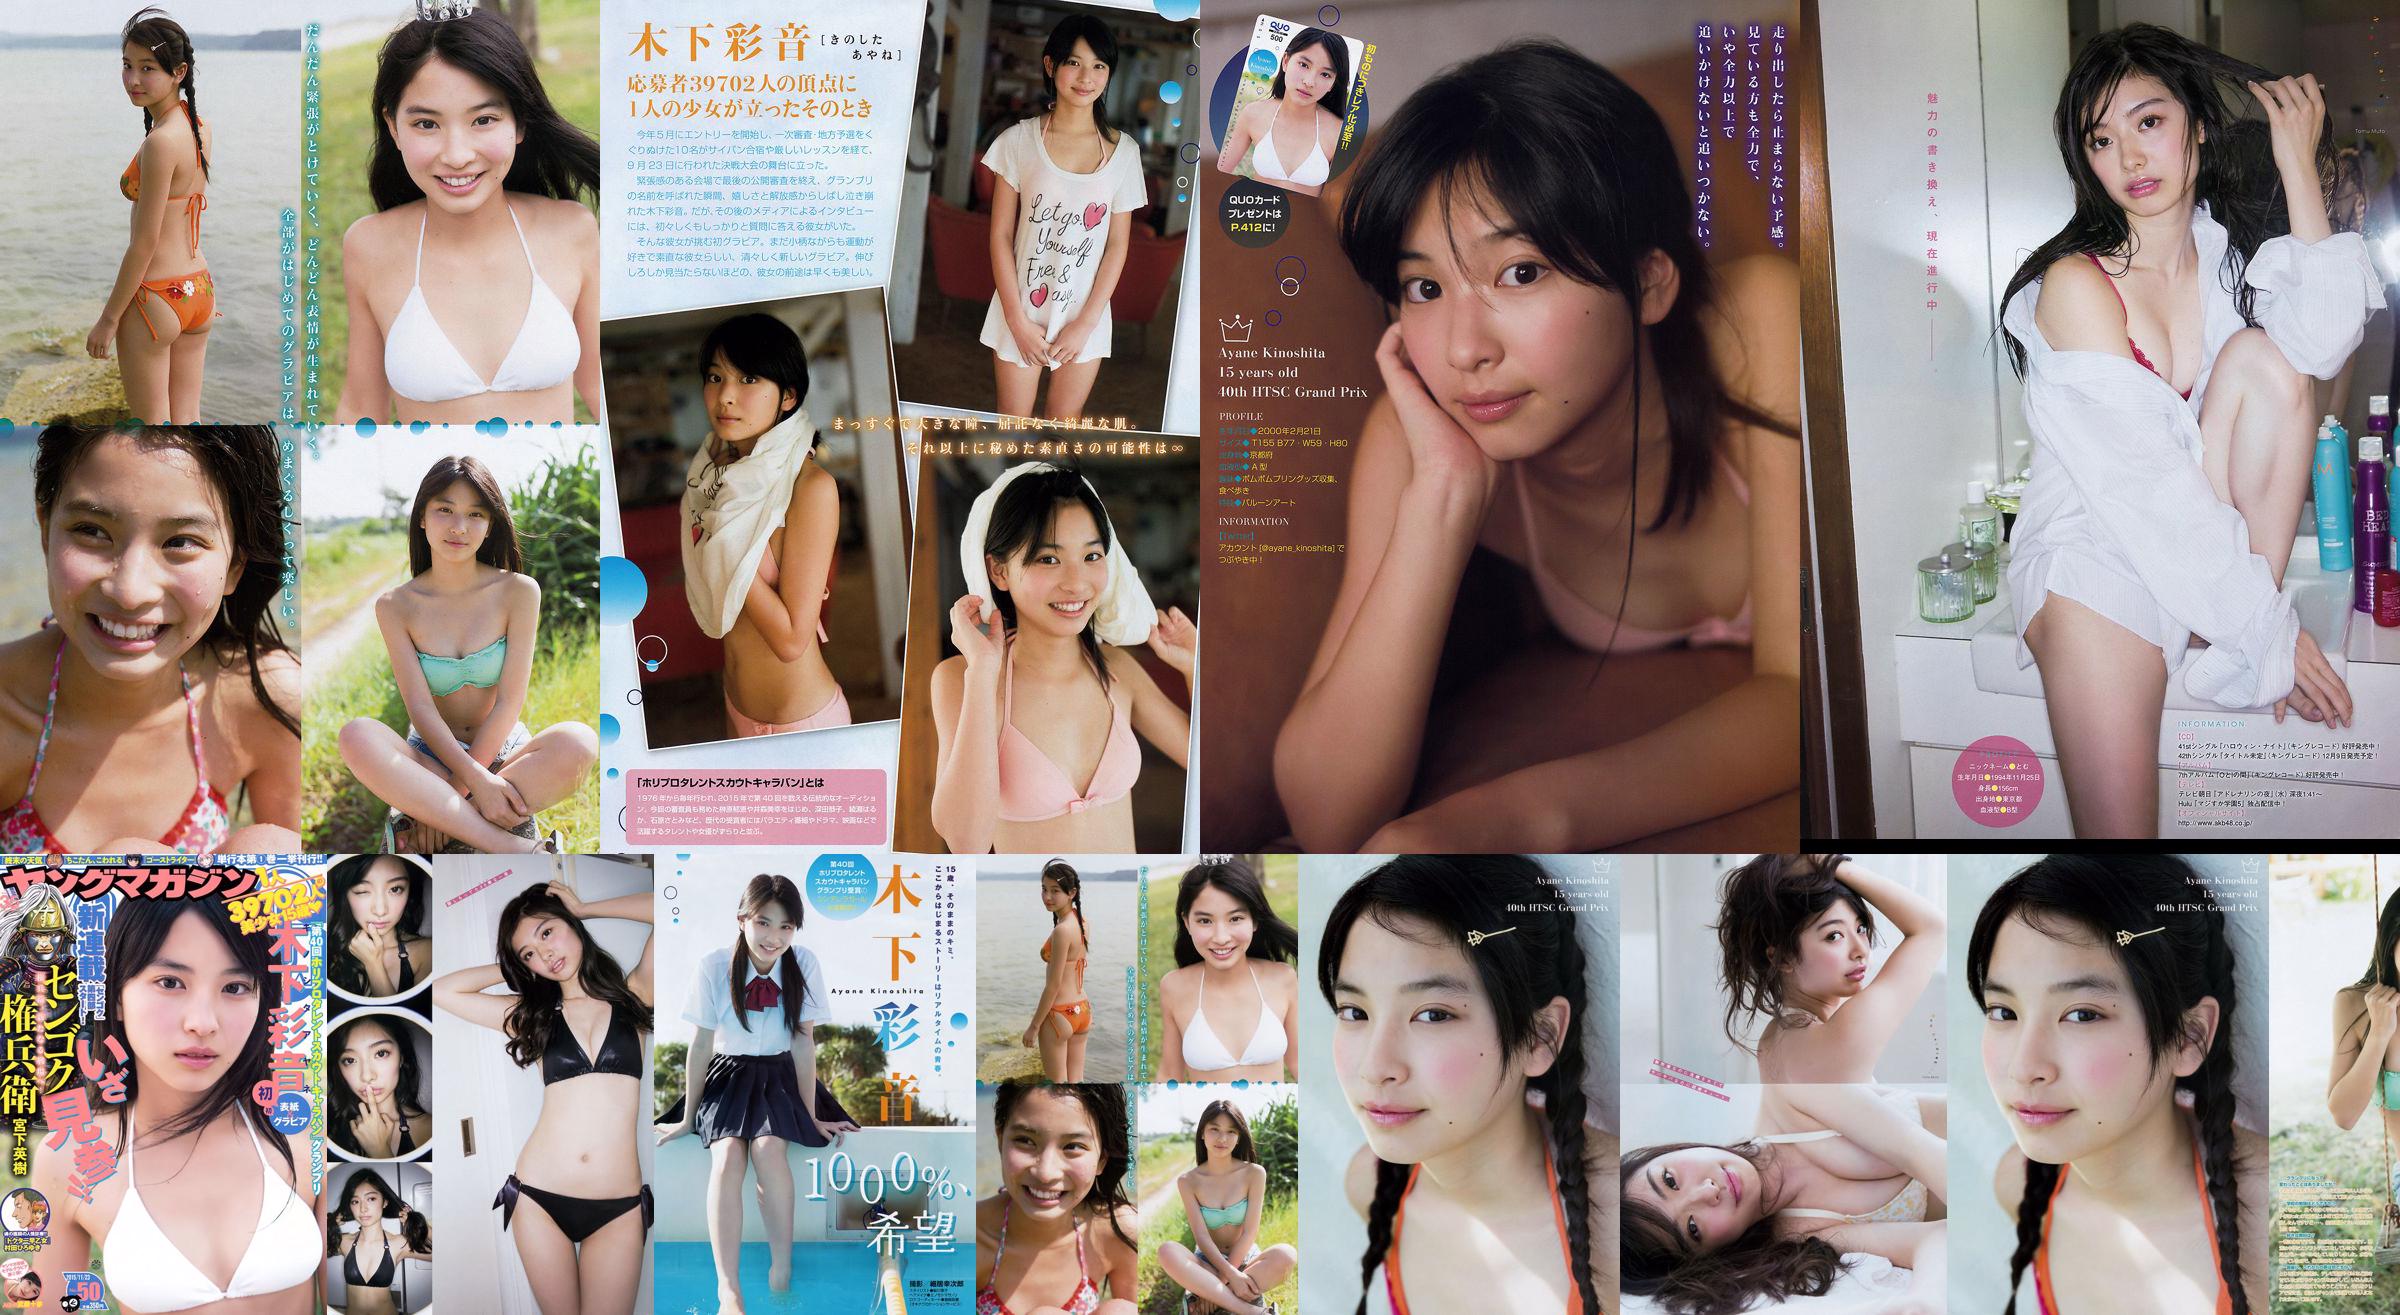 [Tạp chí trẻ Ayane Kinoshita Tomu Muto] Ảnh số 50 năm 2015 No.0a0aca Trang 2